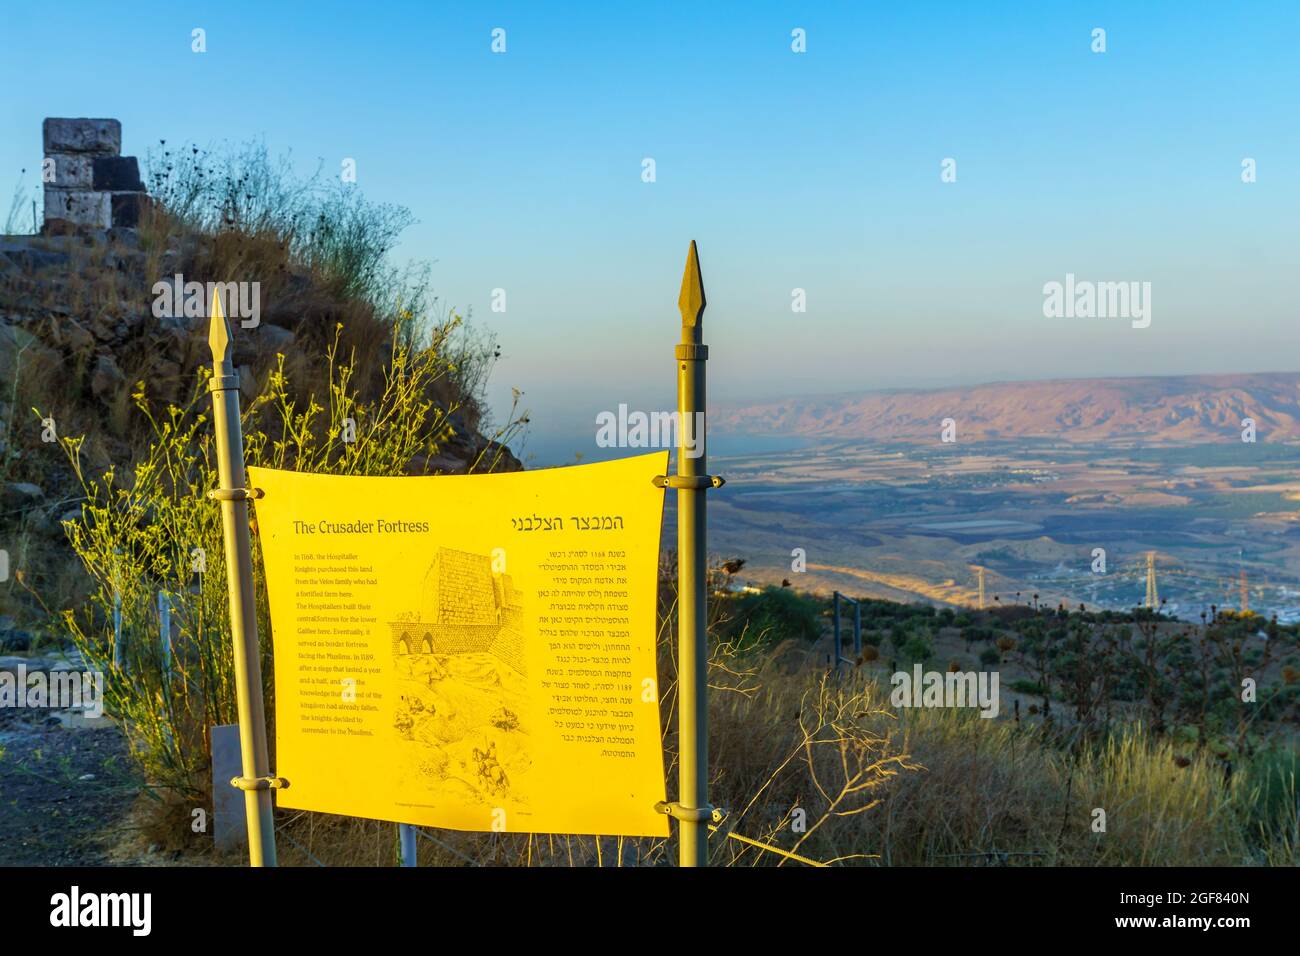 Belvoir, Israele - 19 agosto 2021: Vista di un segno di spiegazione, nel parco nazionale della Fortezza di Belvoir (Kochav HaYarden, Jordan Star). Israele settentrionale Foto Stock